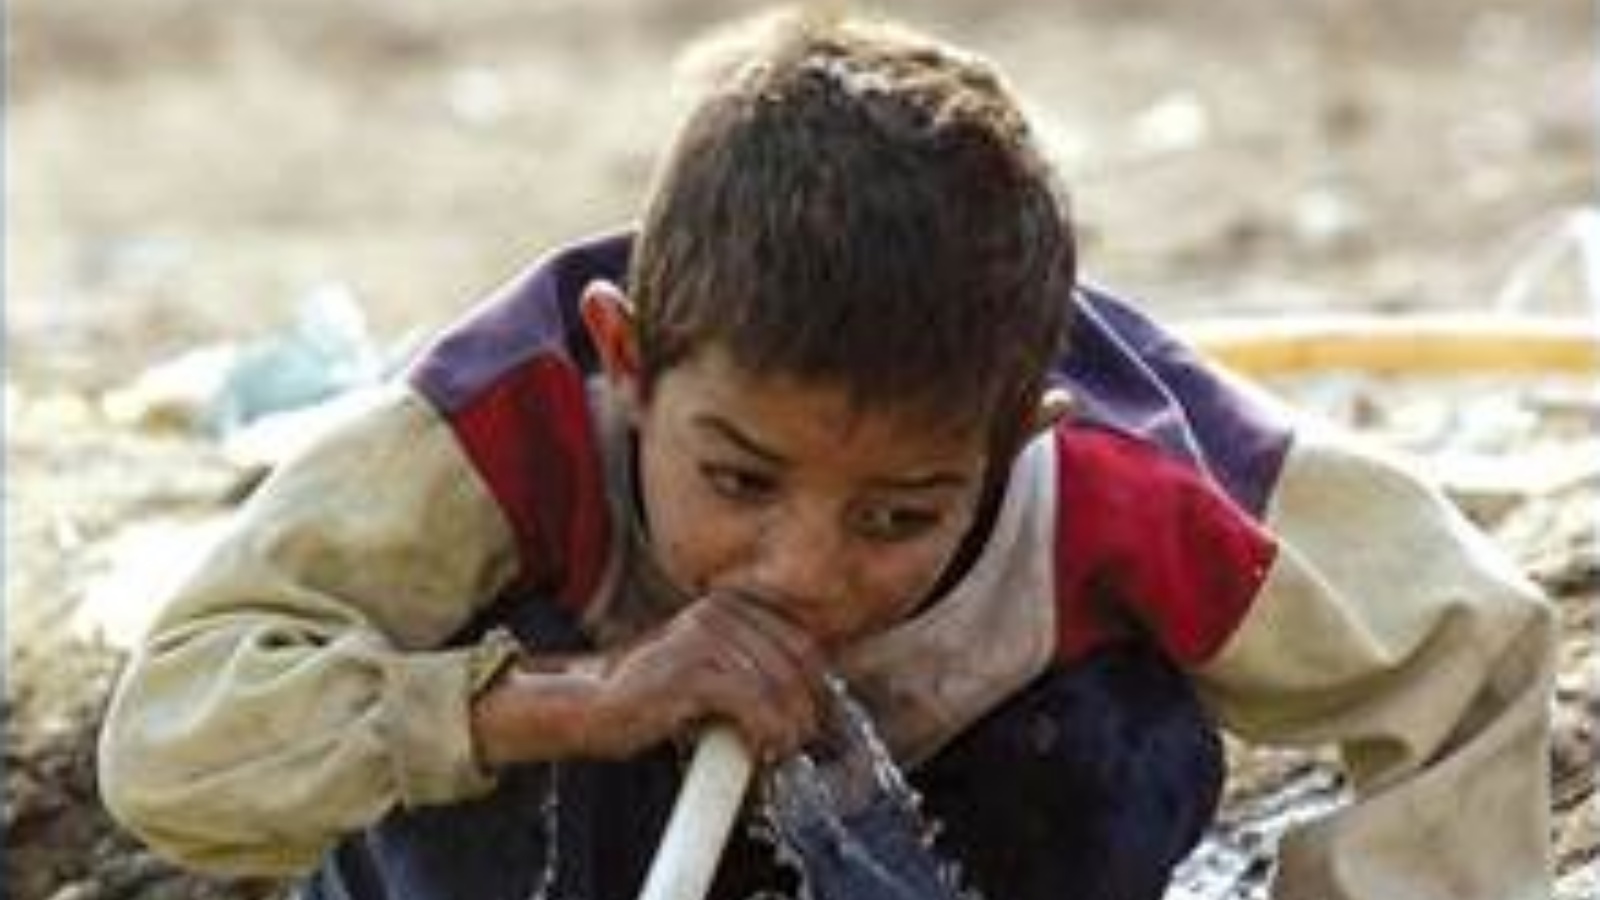 طفل عراقي يشرب من مياه ملوثة (توضيحية)